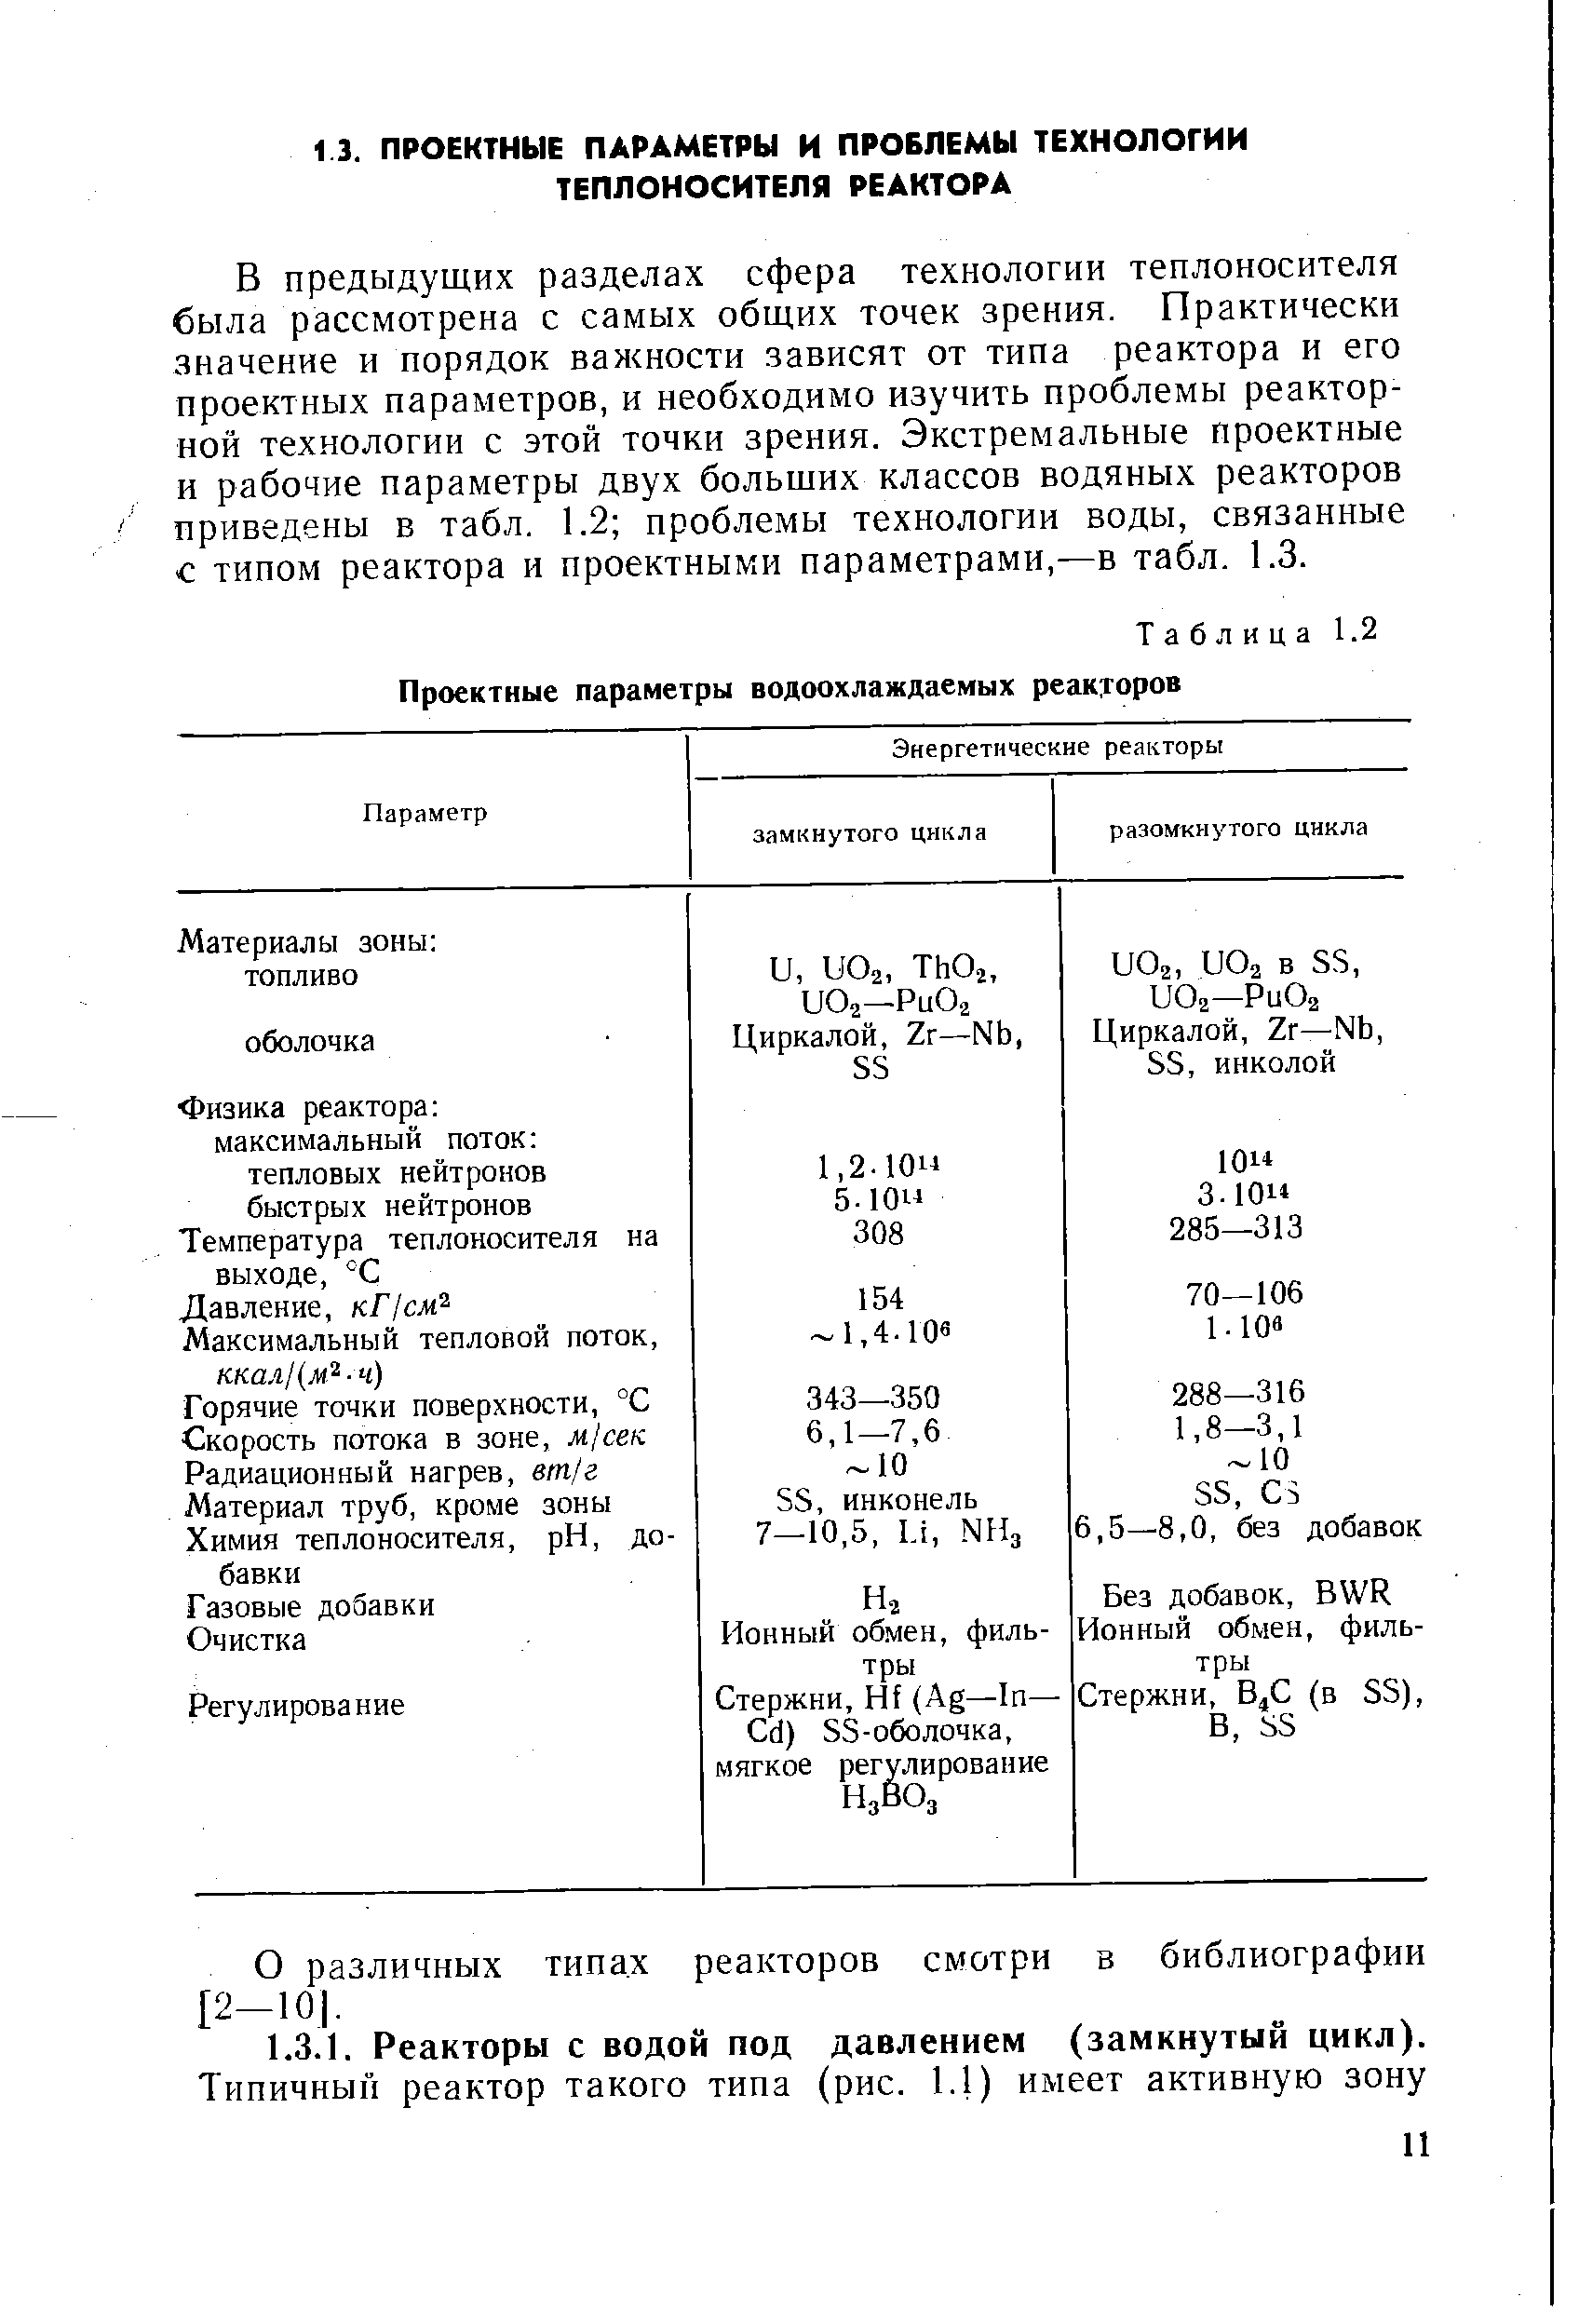 Таблица 1.2 Проектные параметры водоохлаждаемых реакторов
